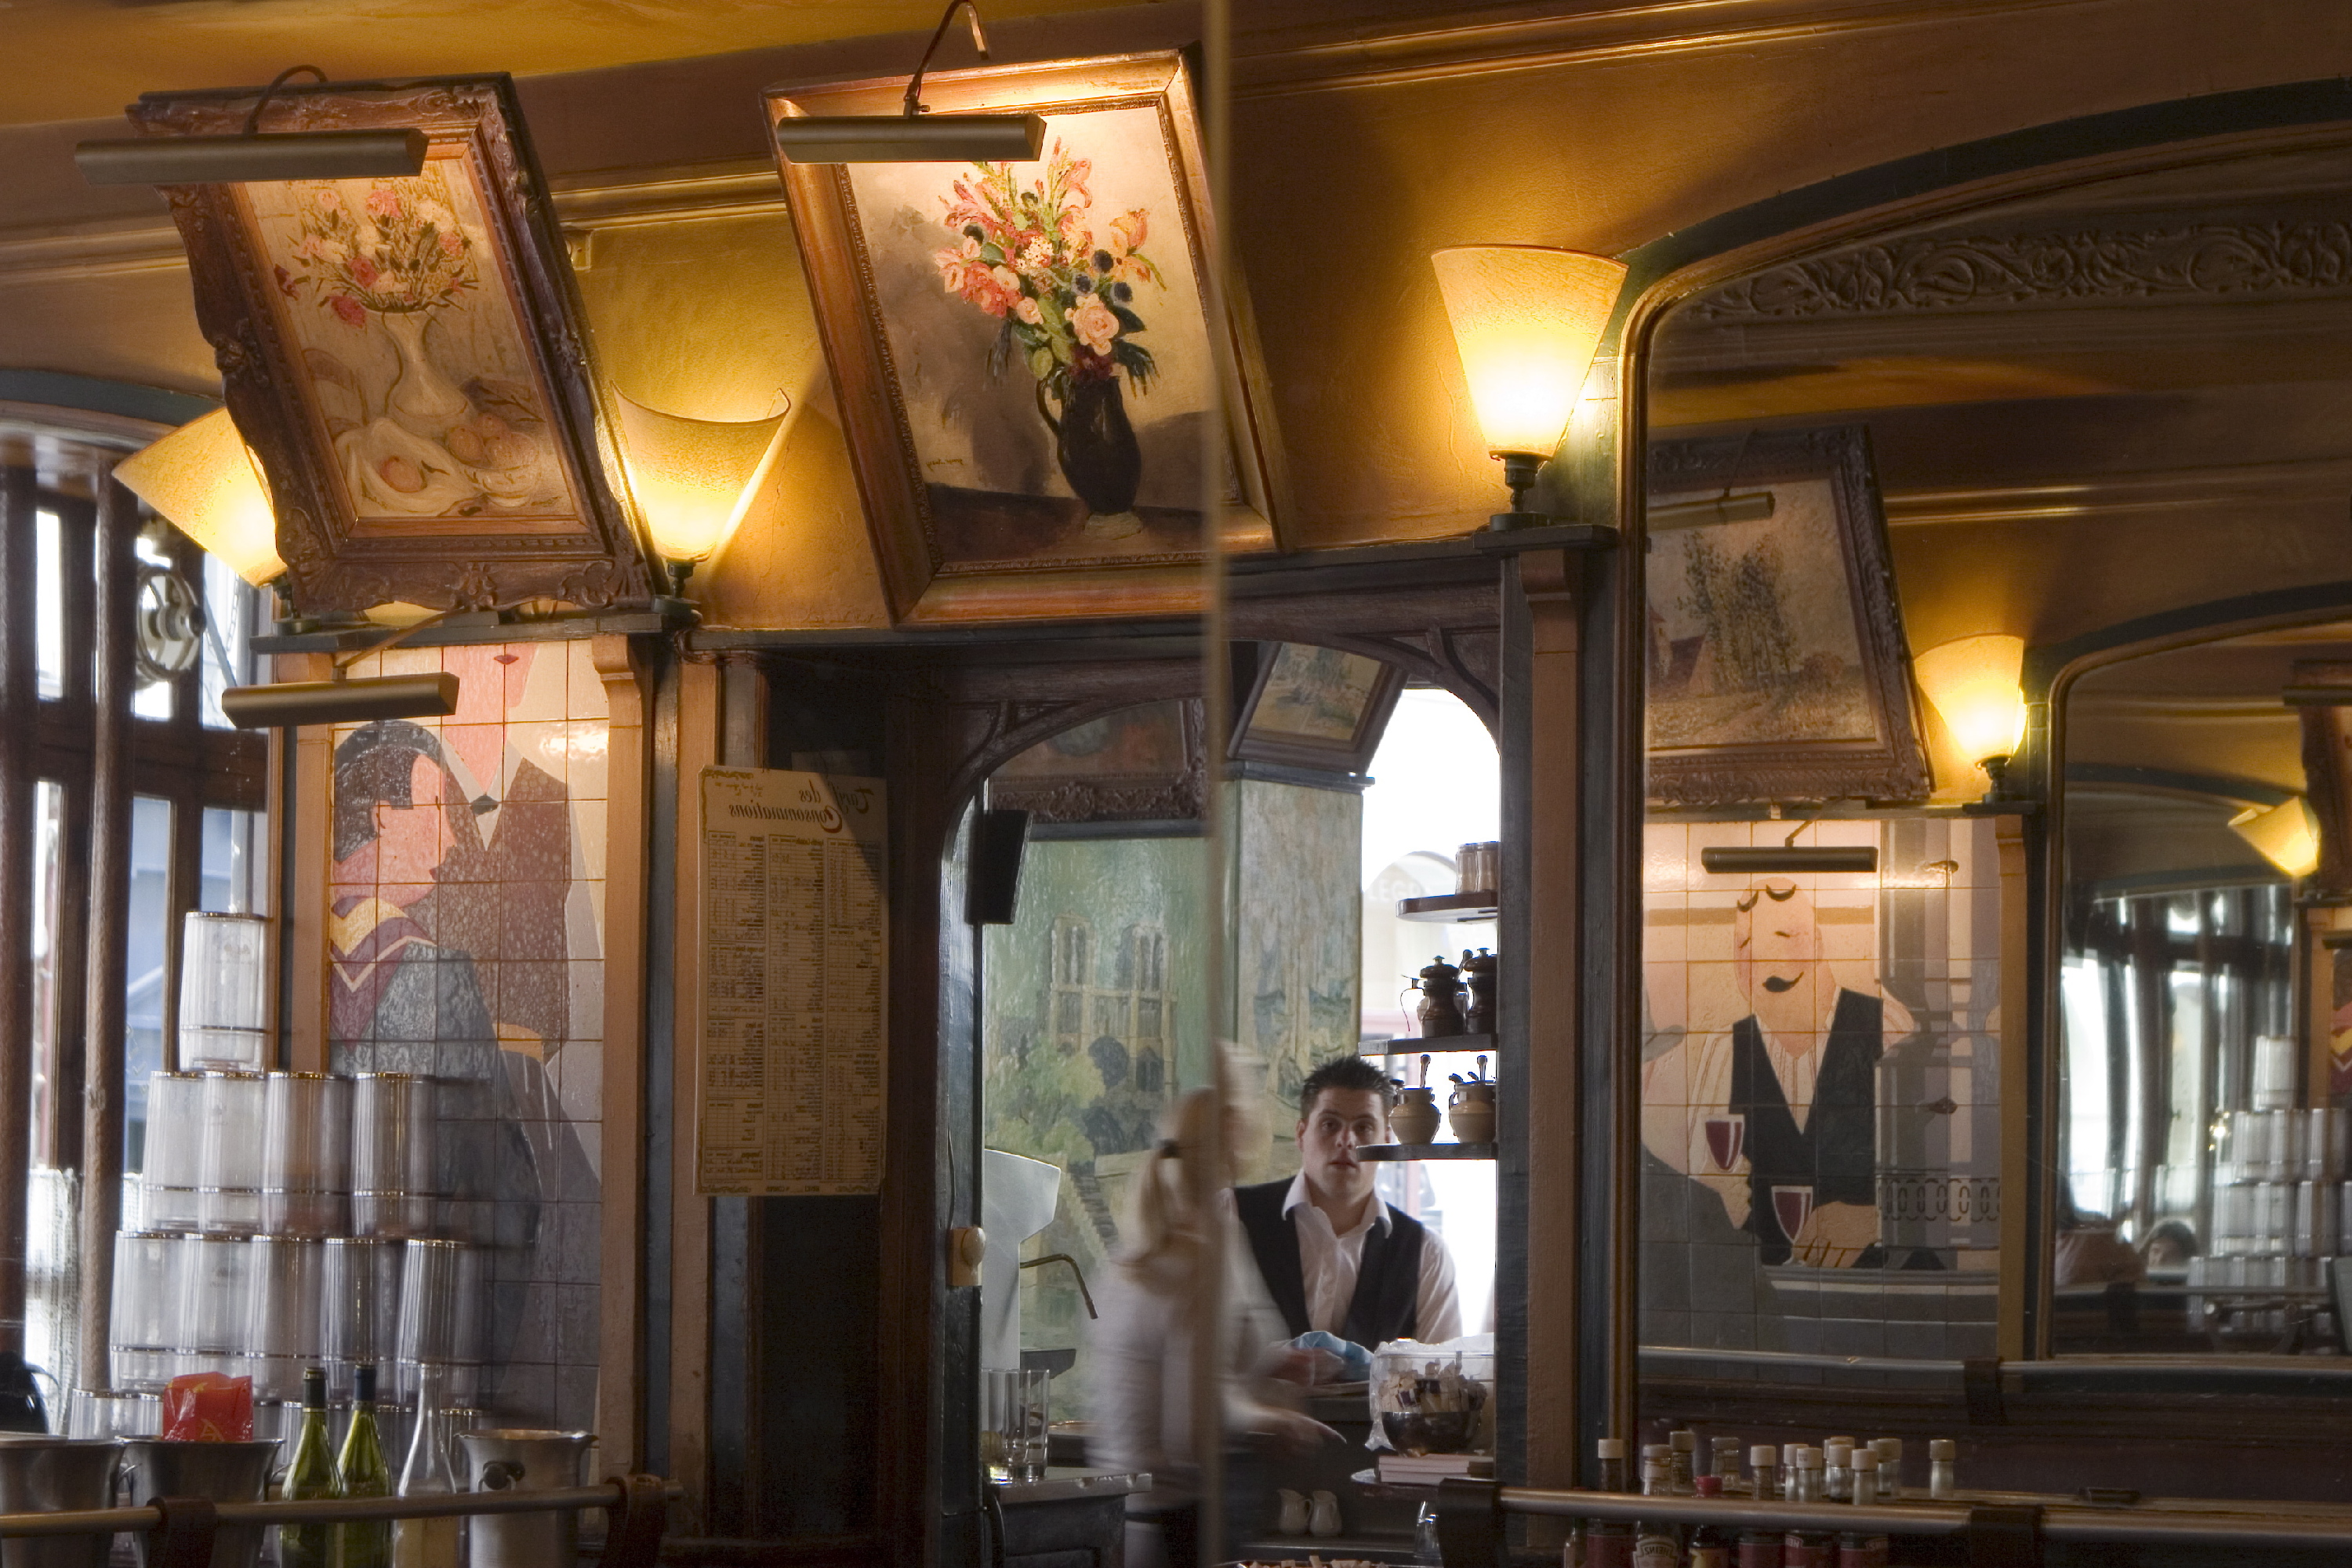 La Palette | Bars and pubs in Saint-Germain-des-Prés, Paris